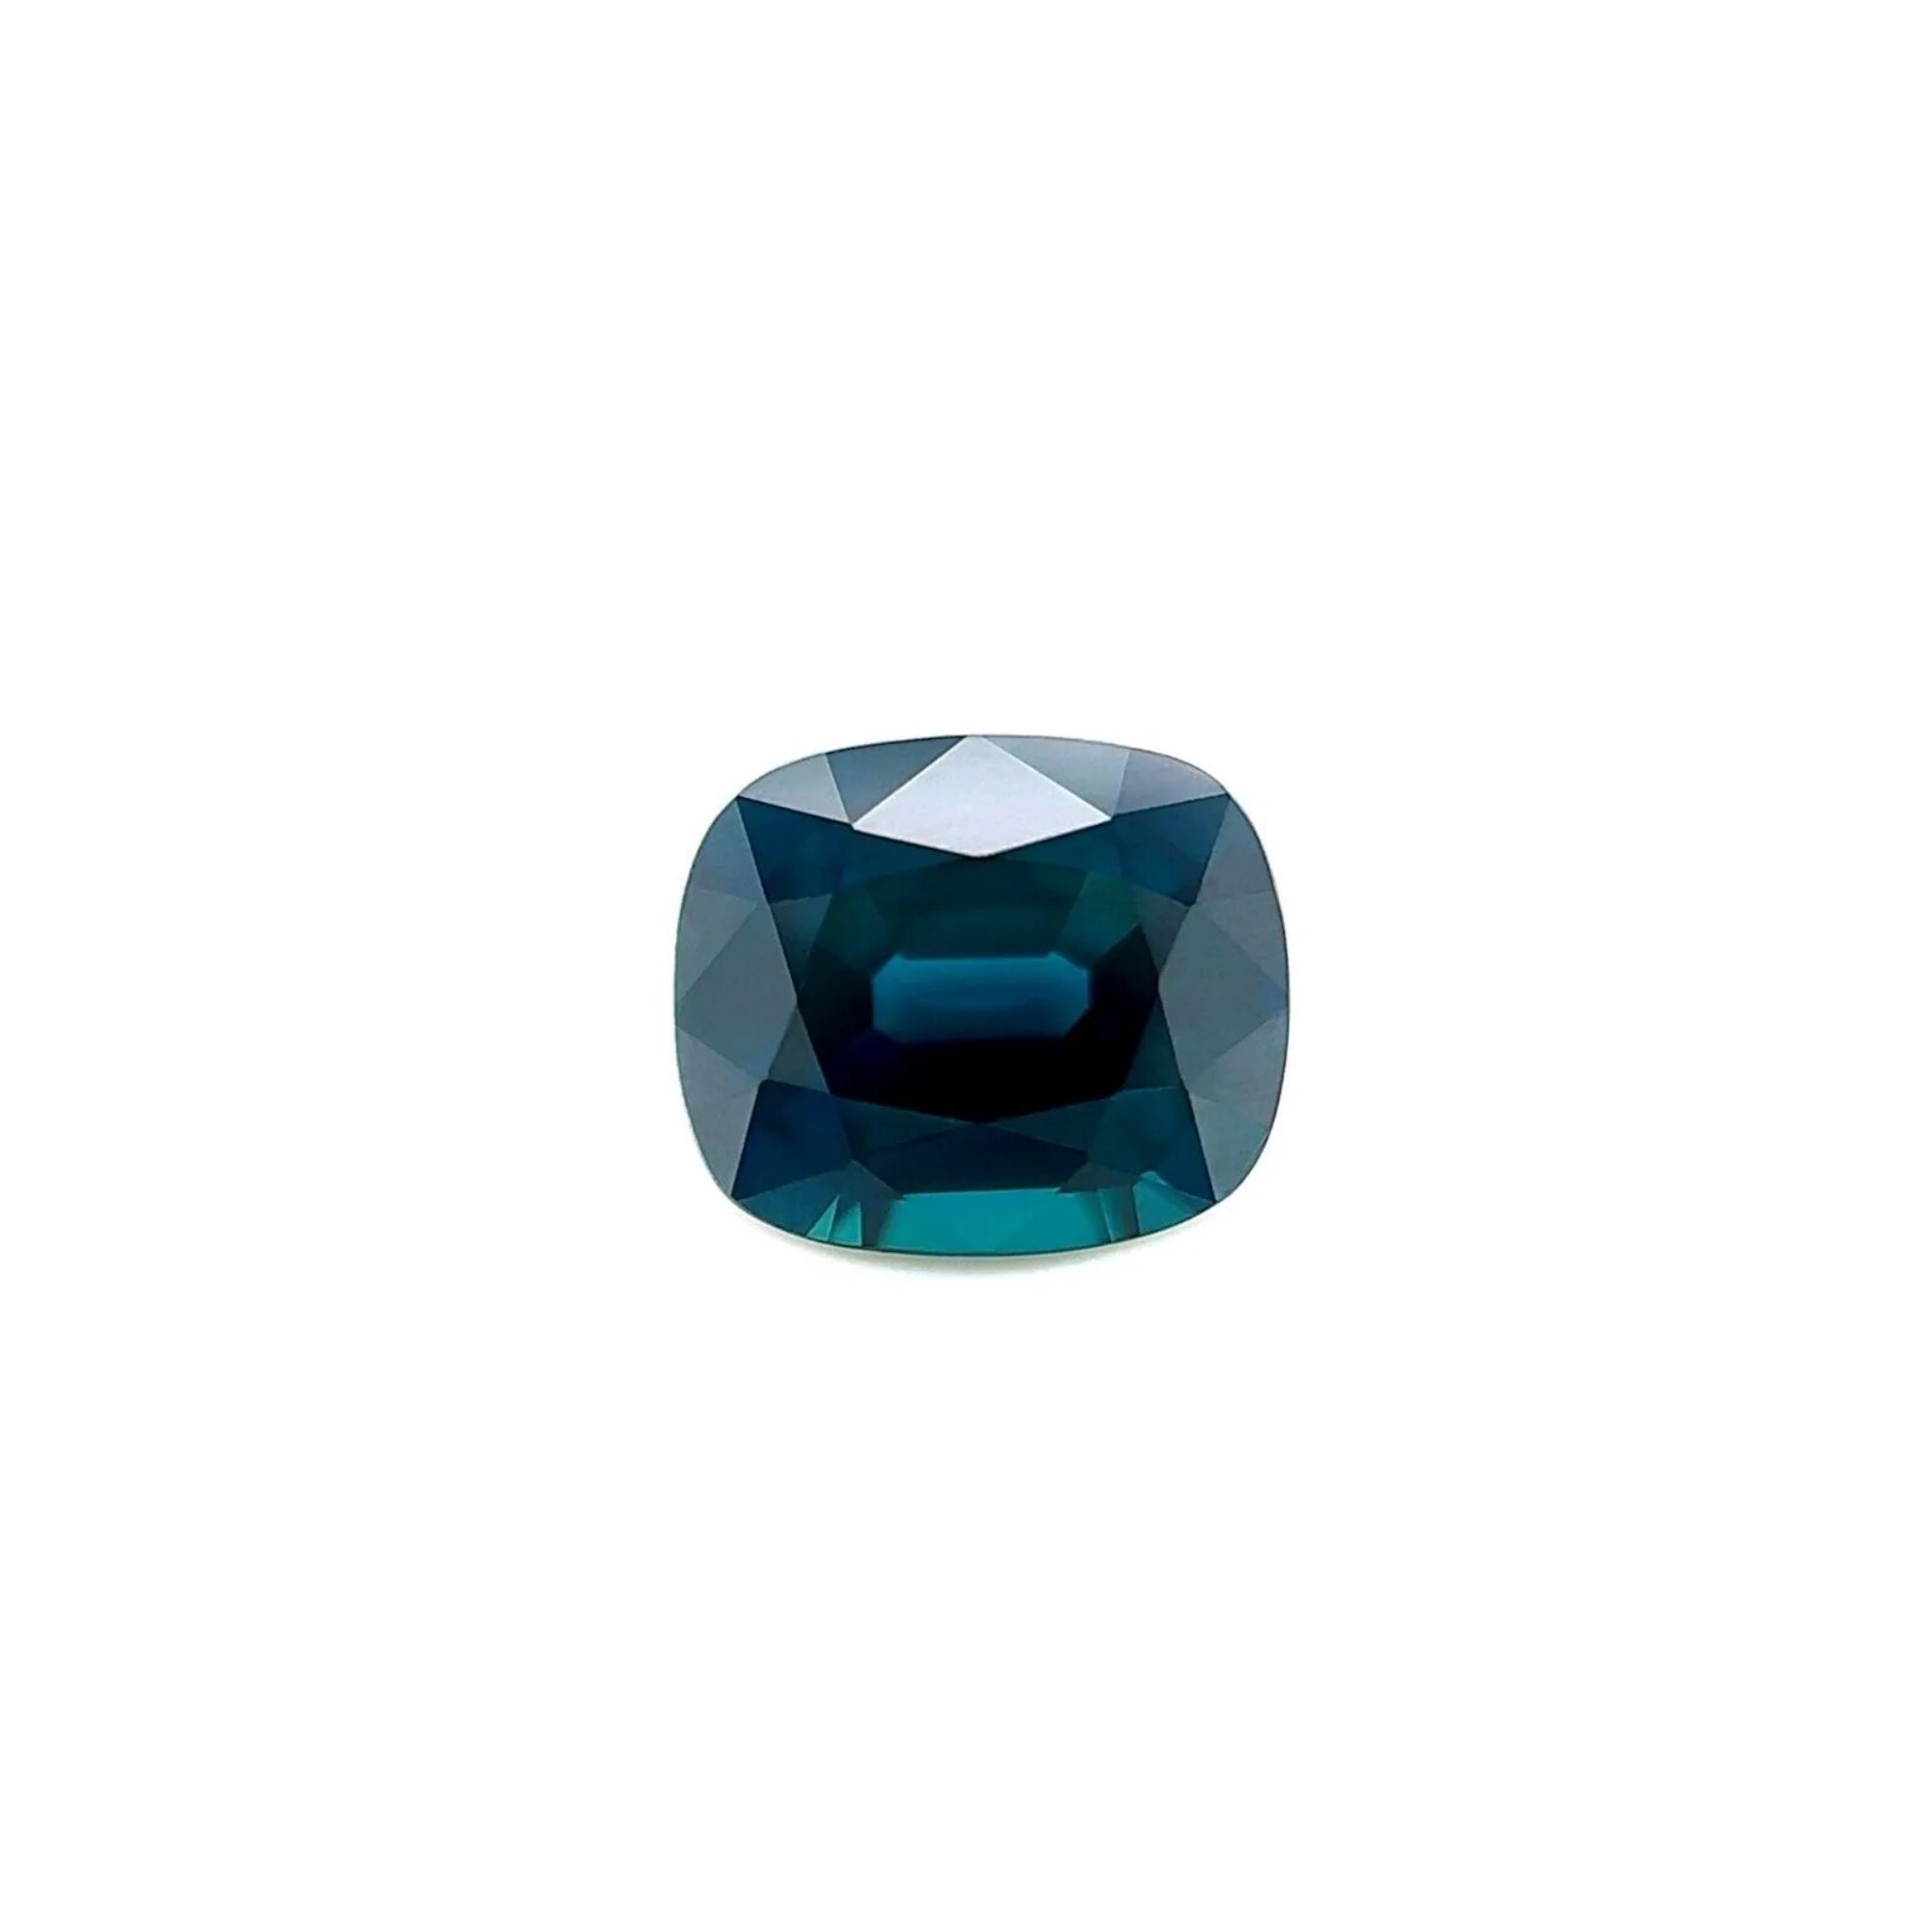 Saphir bleu sarcelle 1,10 carat non traité certifié GRA, taille coussin non chauffée 6,4 x 5,4 mm